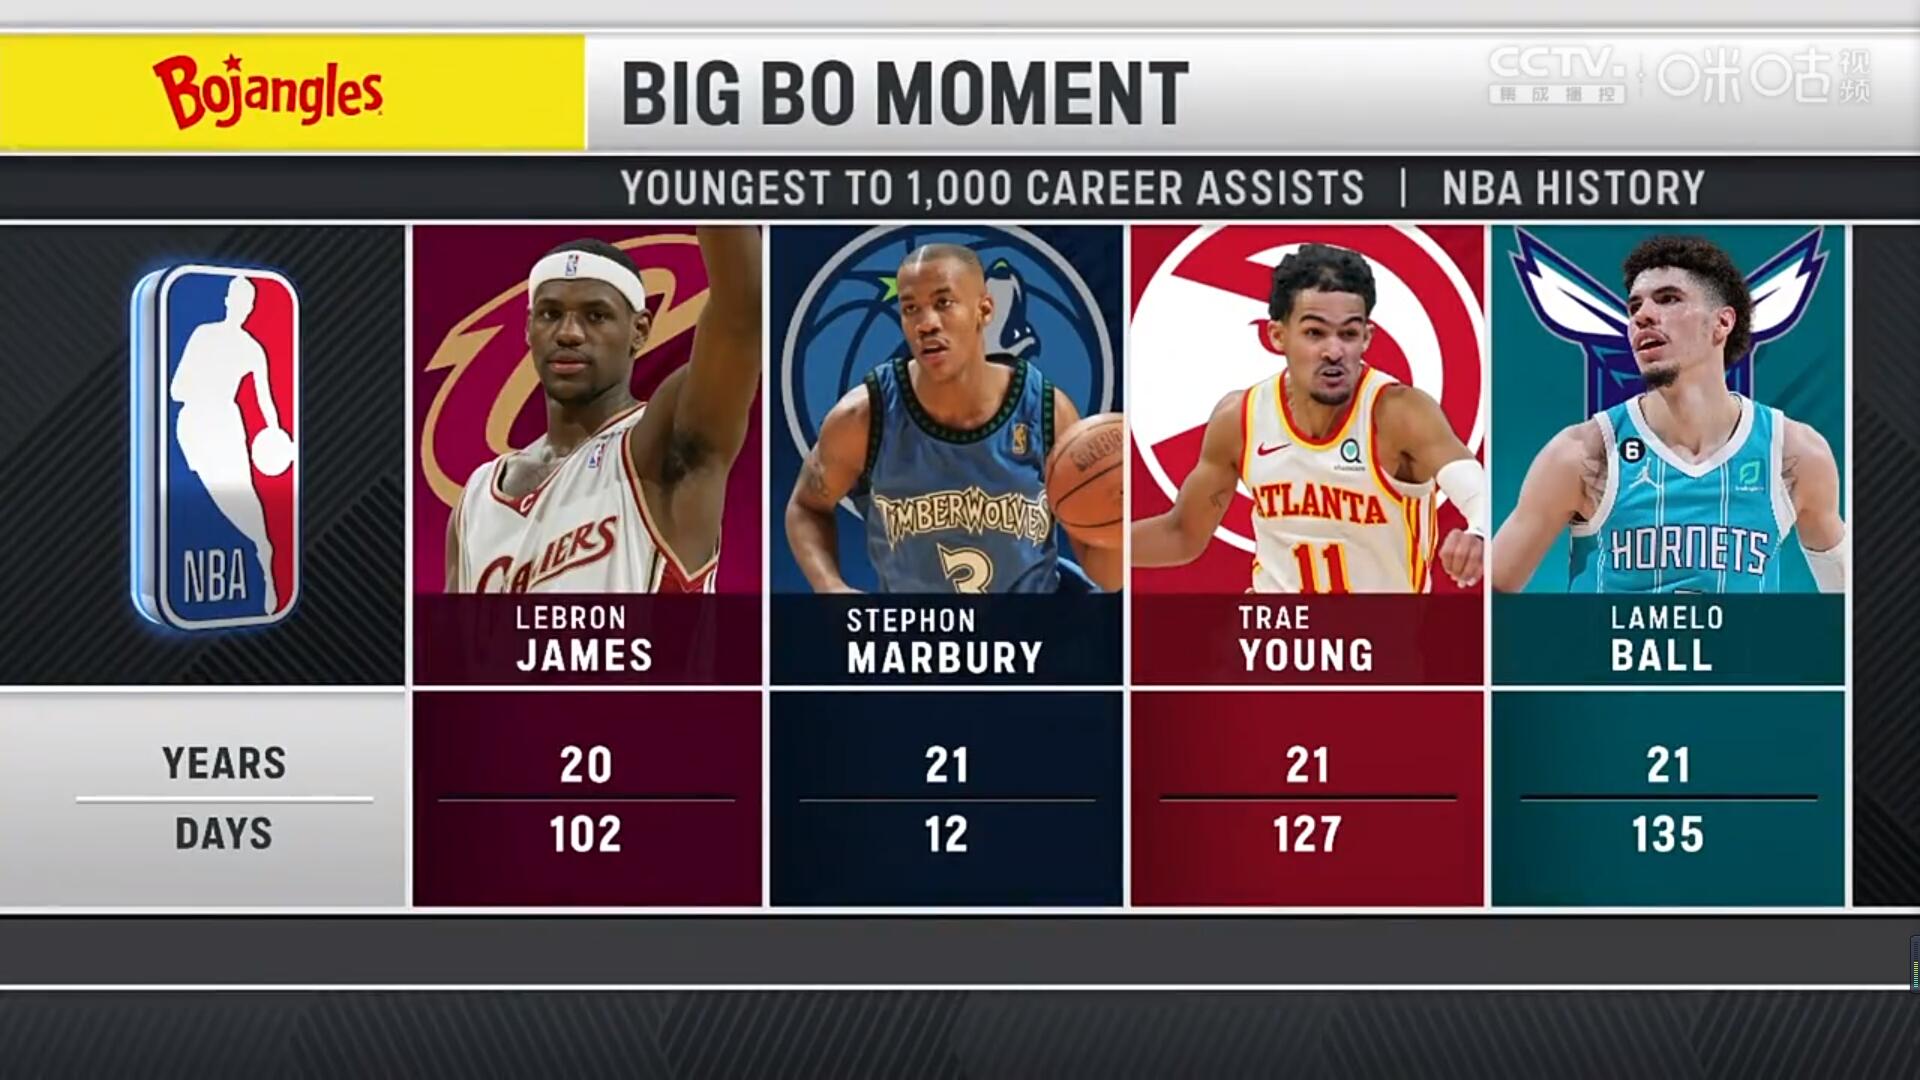 拉梅洛-鲍尔成黄蜂队史送出1000次助攻最年轻球员 NBA历史第4年轻